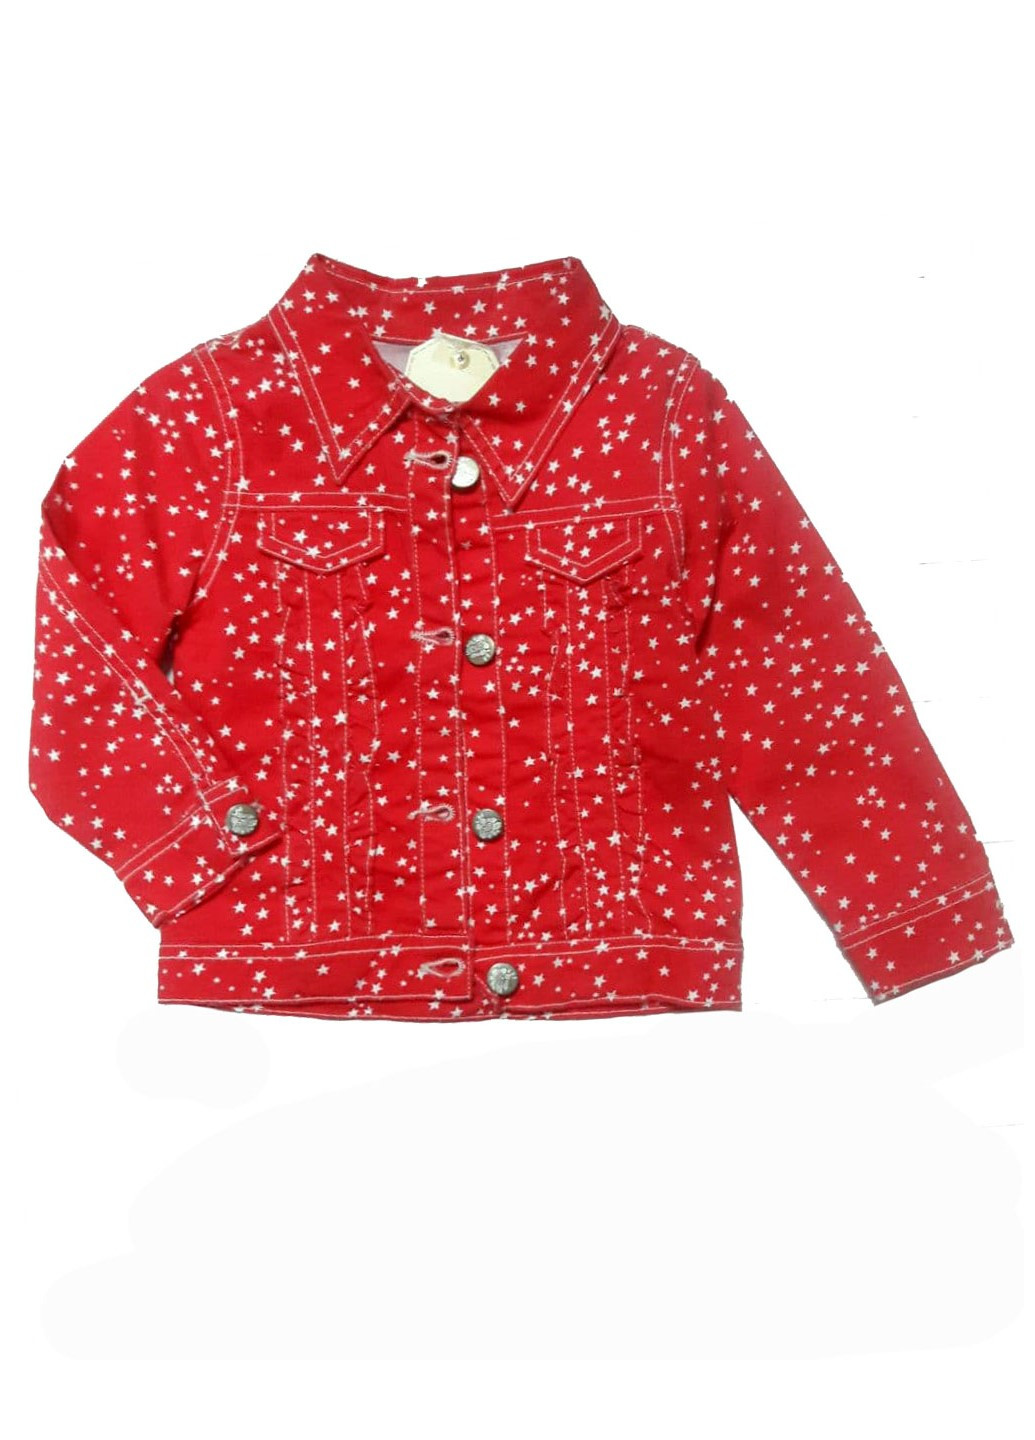 Красная джинсовая рубашка со звездами Sani